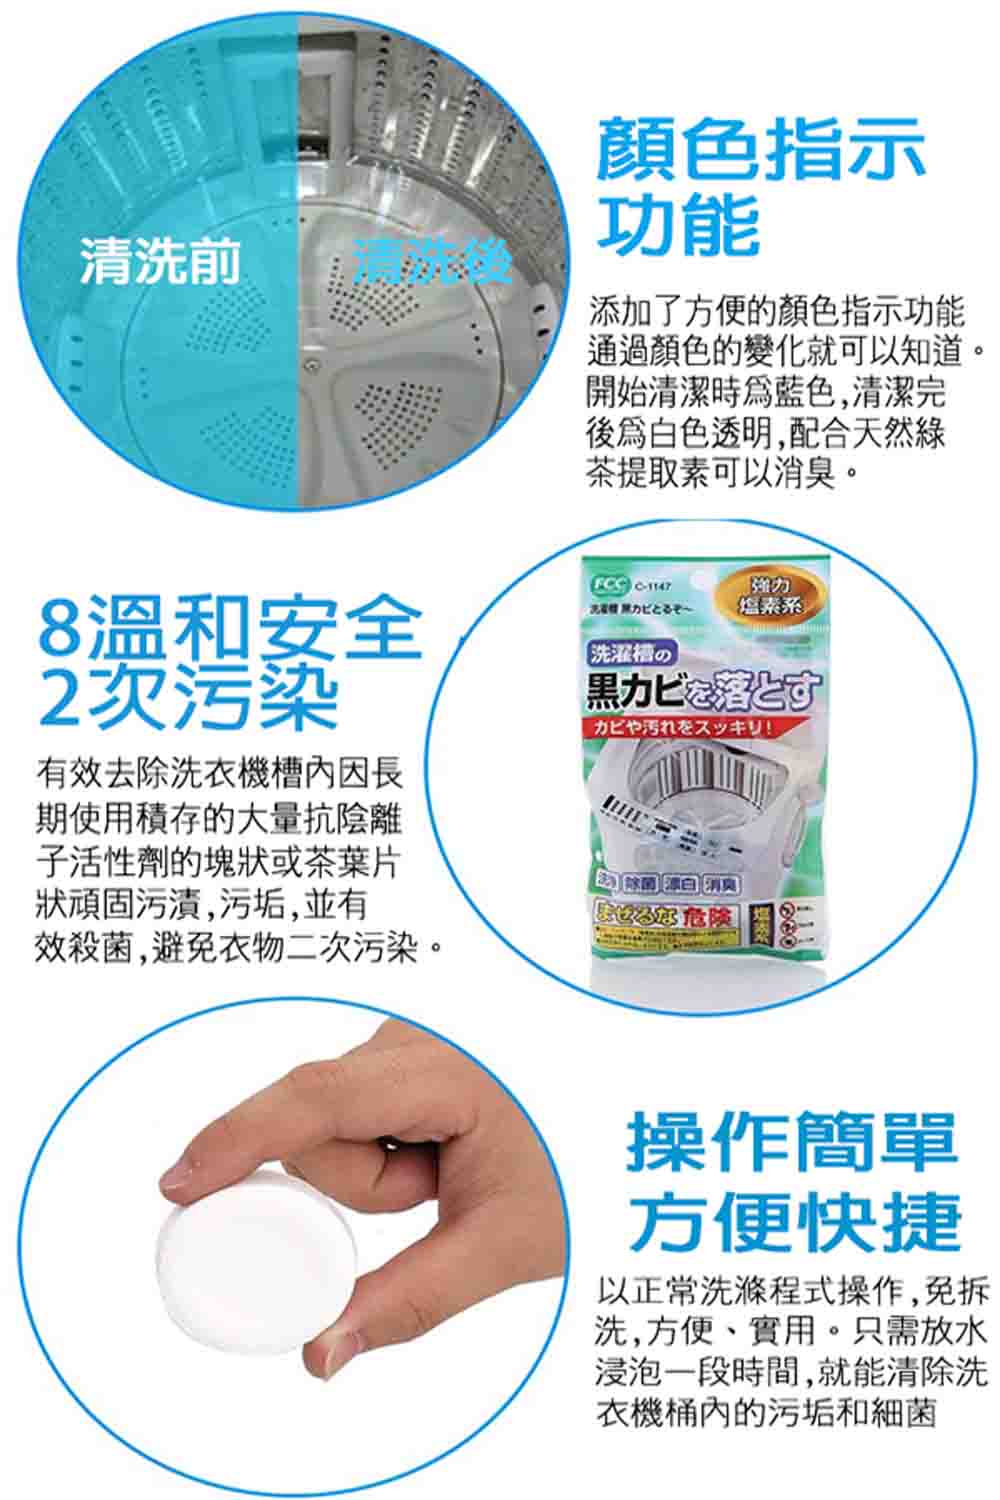 寶盒百貨 日本製 洗衣機清潔劑(洗衣槽專用 50g1顆1包共